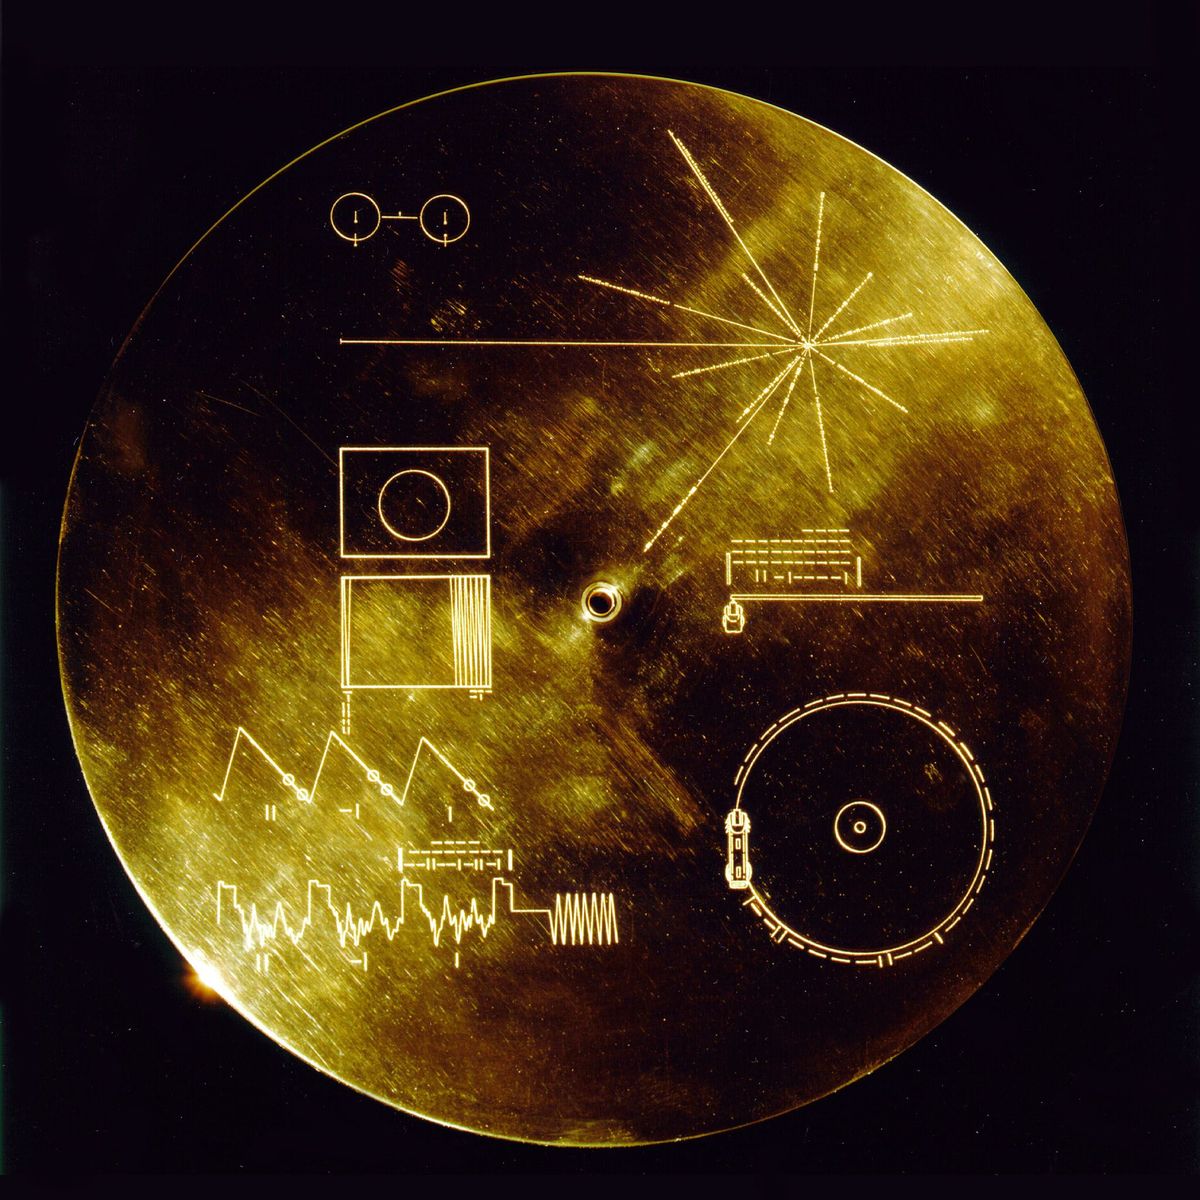 Deze beschermkap gemaakt van een goudaluminiumverbinding werd ontworpen om de Golden Records gouden grammofoonplaten op de sondes Voyager 1 en 2 te beschermen tegen het bombardement van micrometeorieten maar diende ook nog een andere doel hij gaf de eventuele vinders aanwijzingen voor het afspelen van de grammofoonplaat Het verklarende diagram staat zowel op de binnen als buitenkant van de beschermkap omdat het diagram op de buitenkant na verloop van tijd zou wegslijten